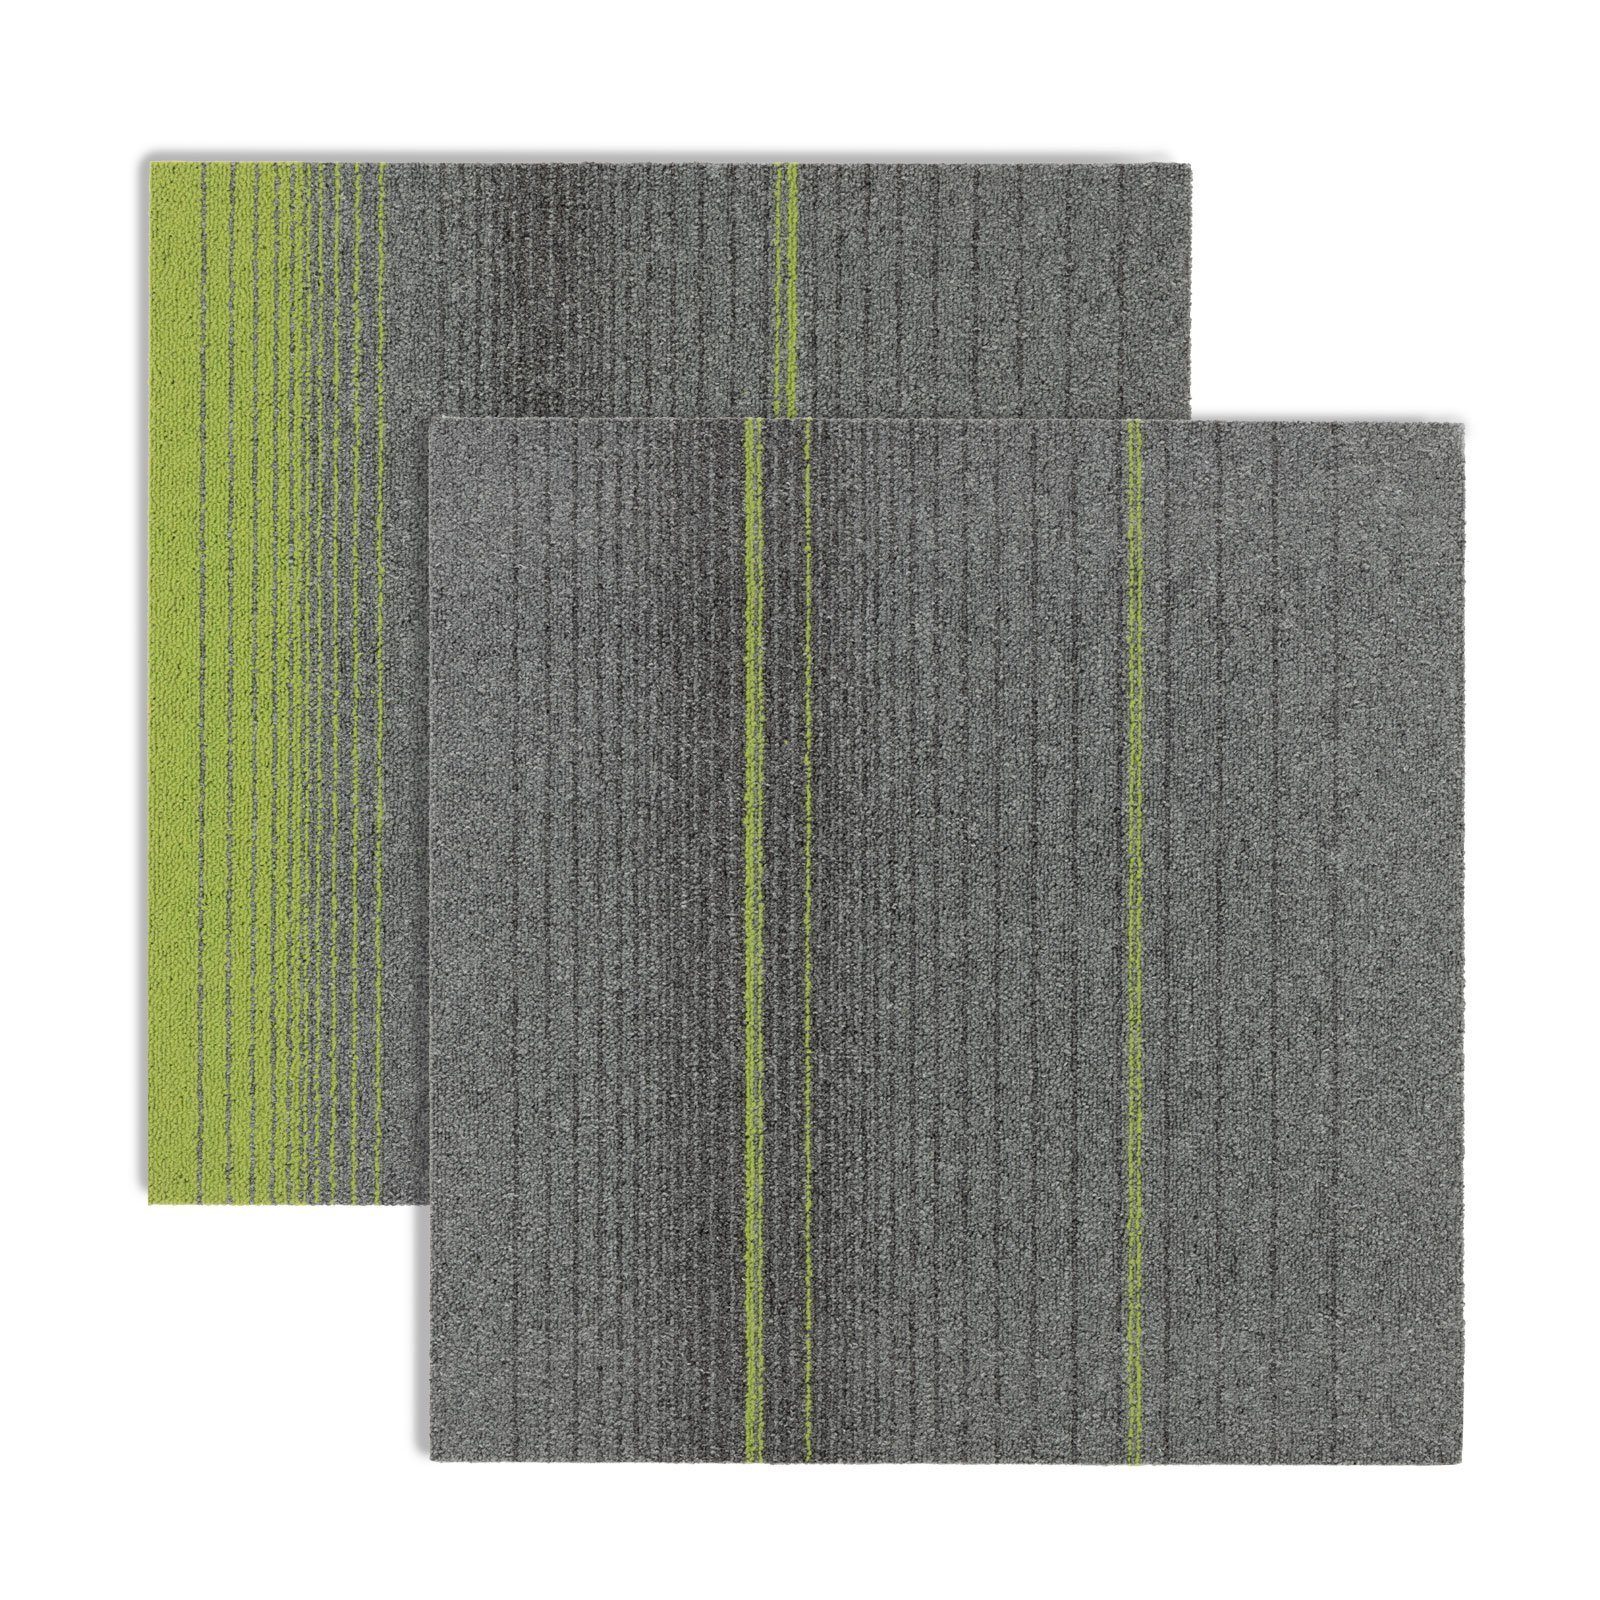 Teppichfliese Sheffield, Erhältlich in 4 Farben, Bodenschutz, 50 x 50 cm, Fliese, Floordirekt